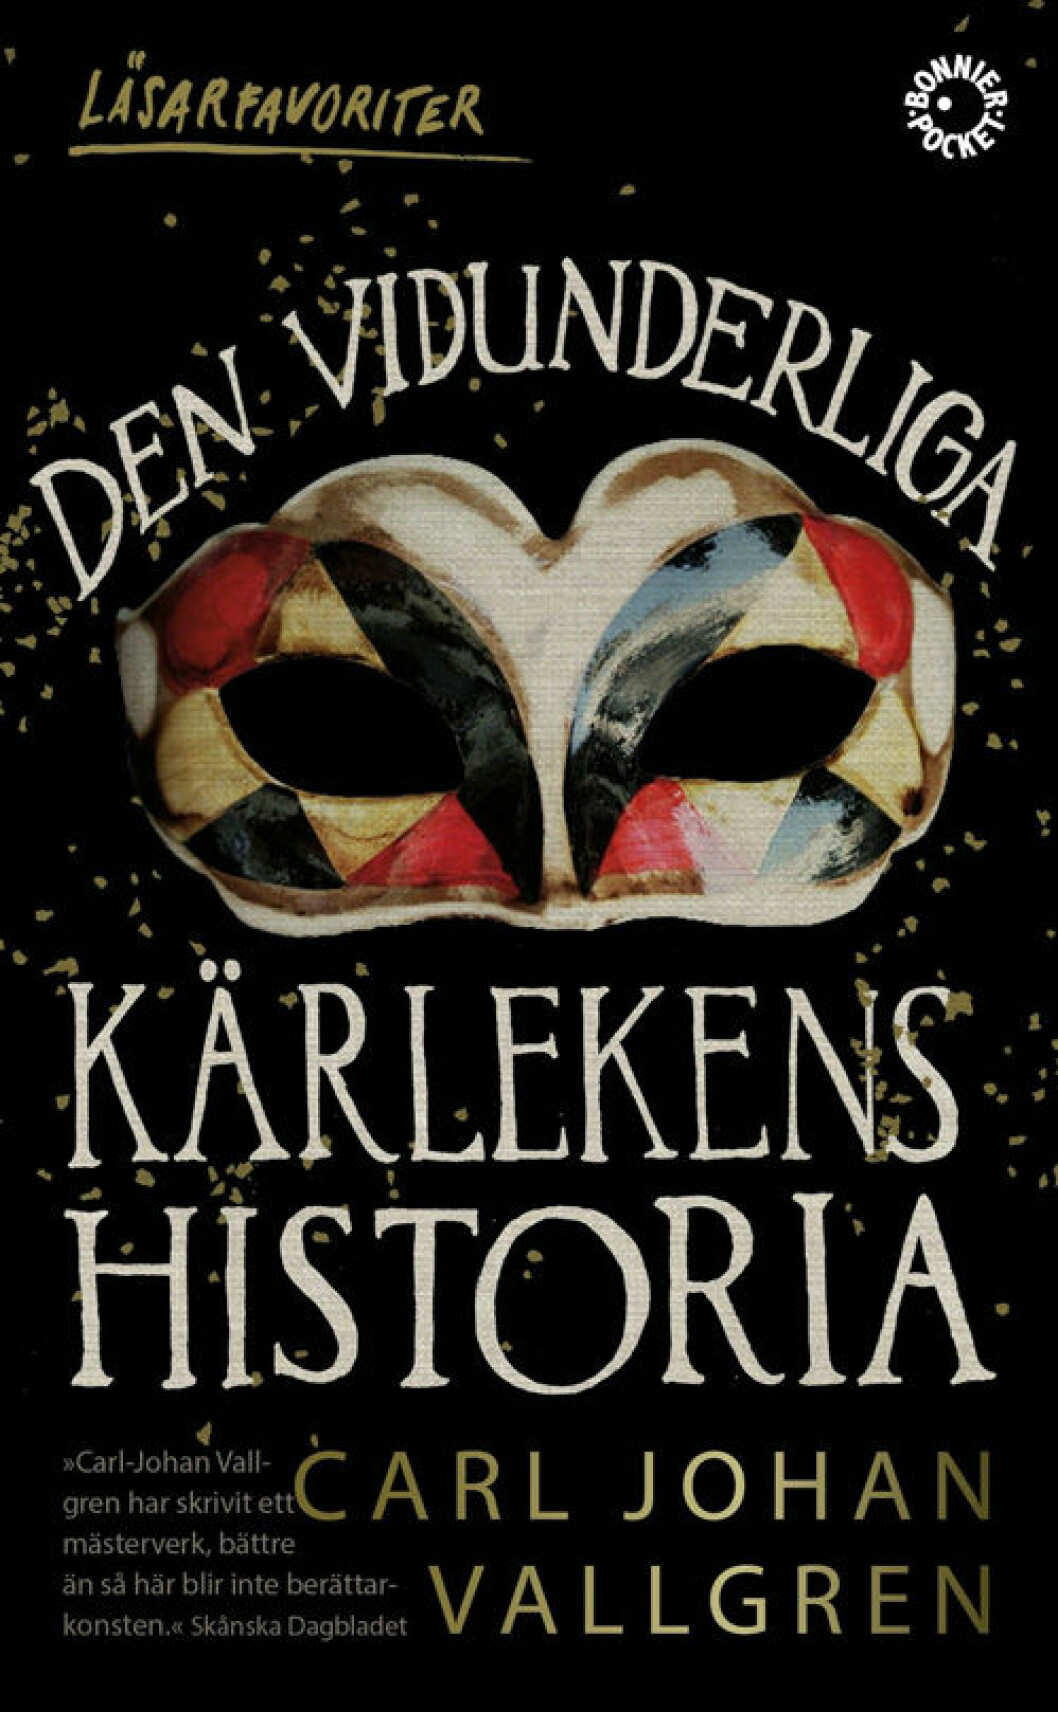 Den vidunderliga kärlekens historia av Carl Johan Vallgren. 